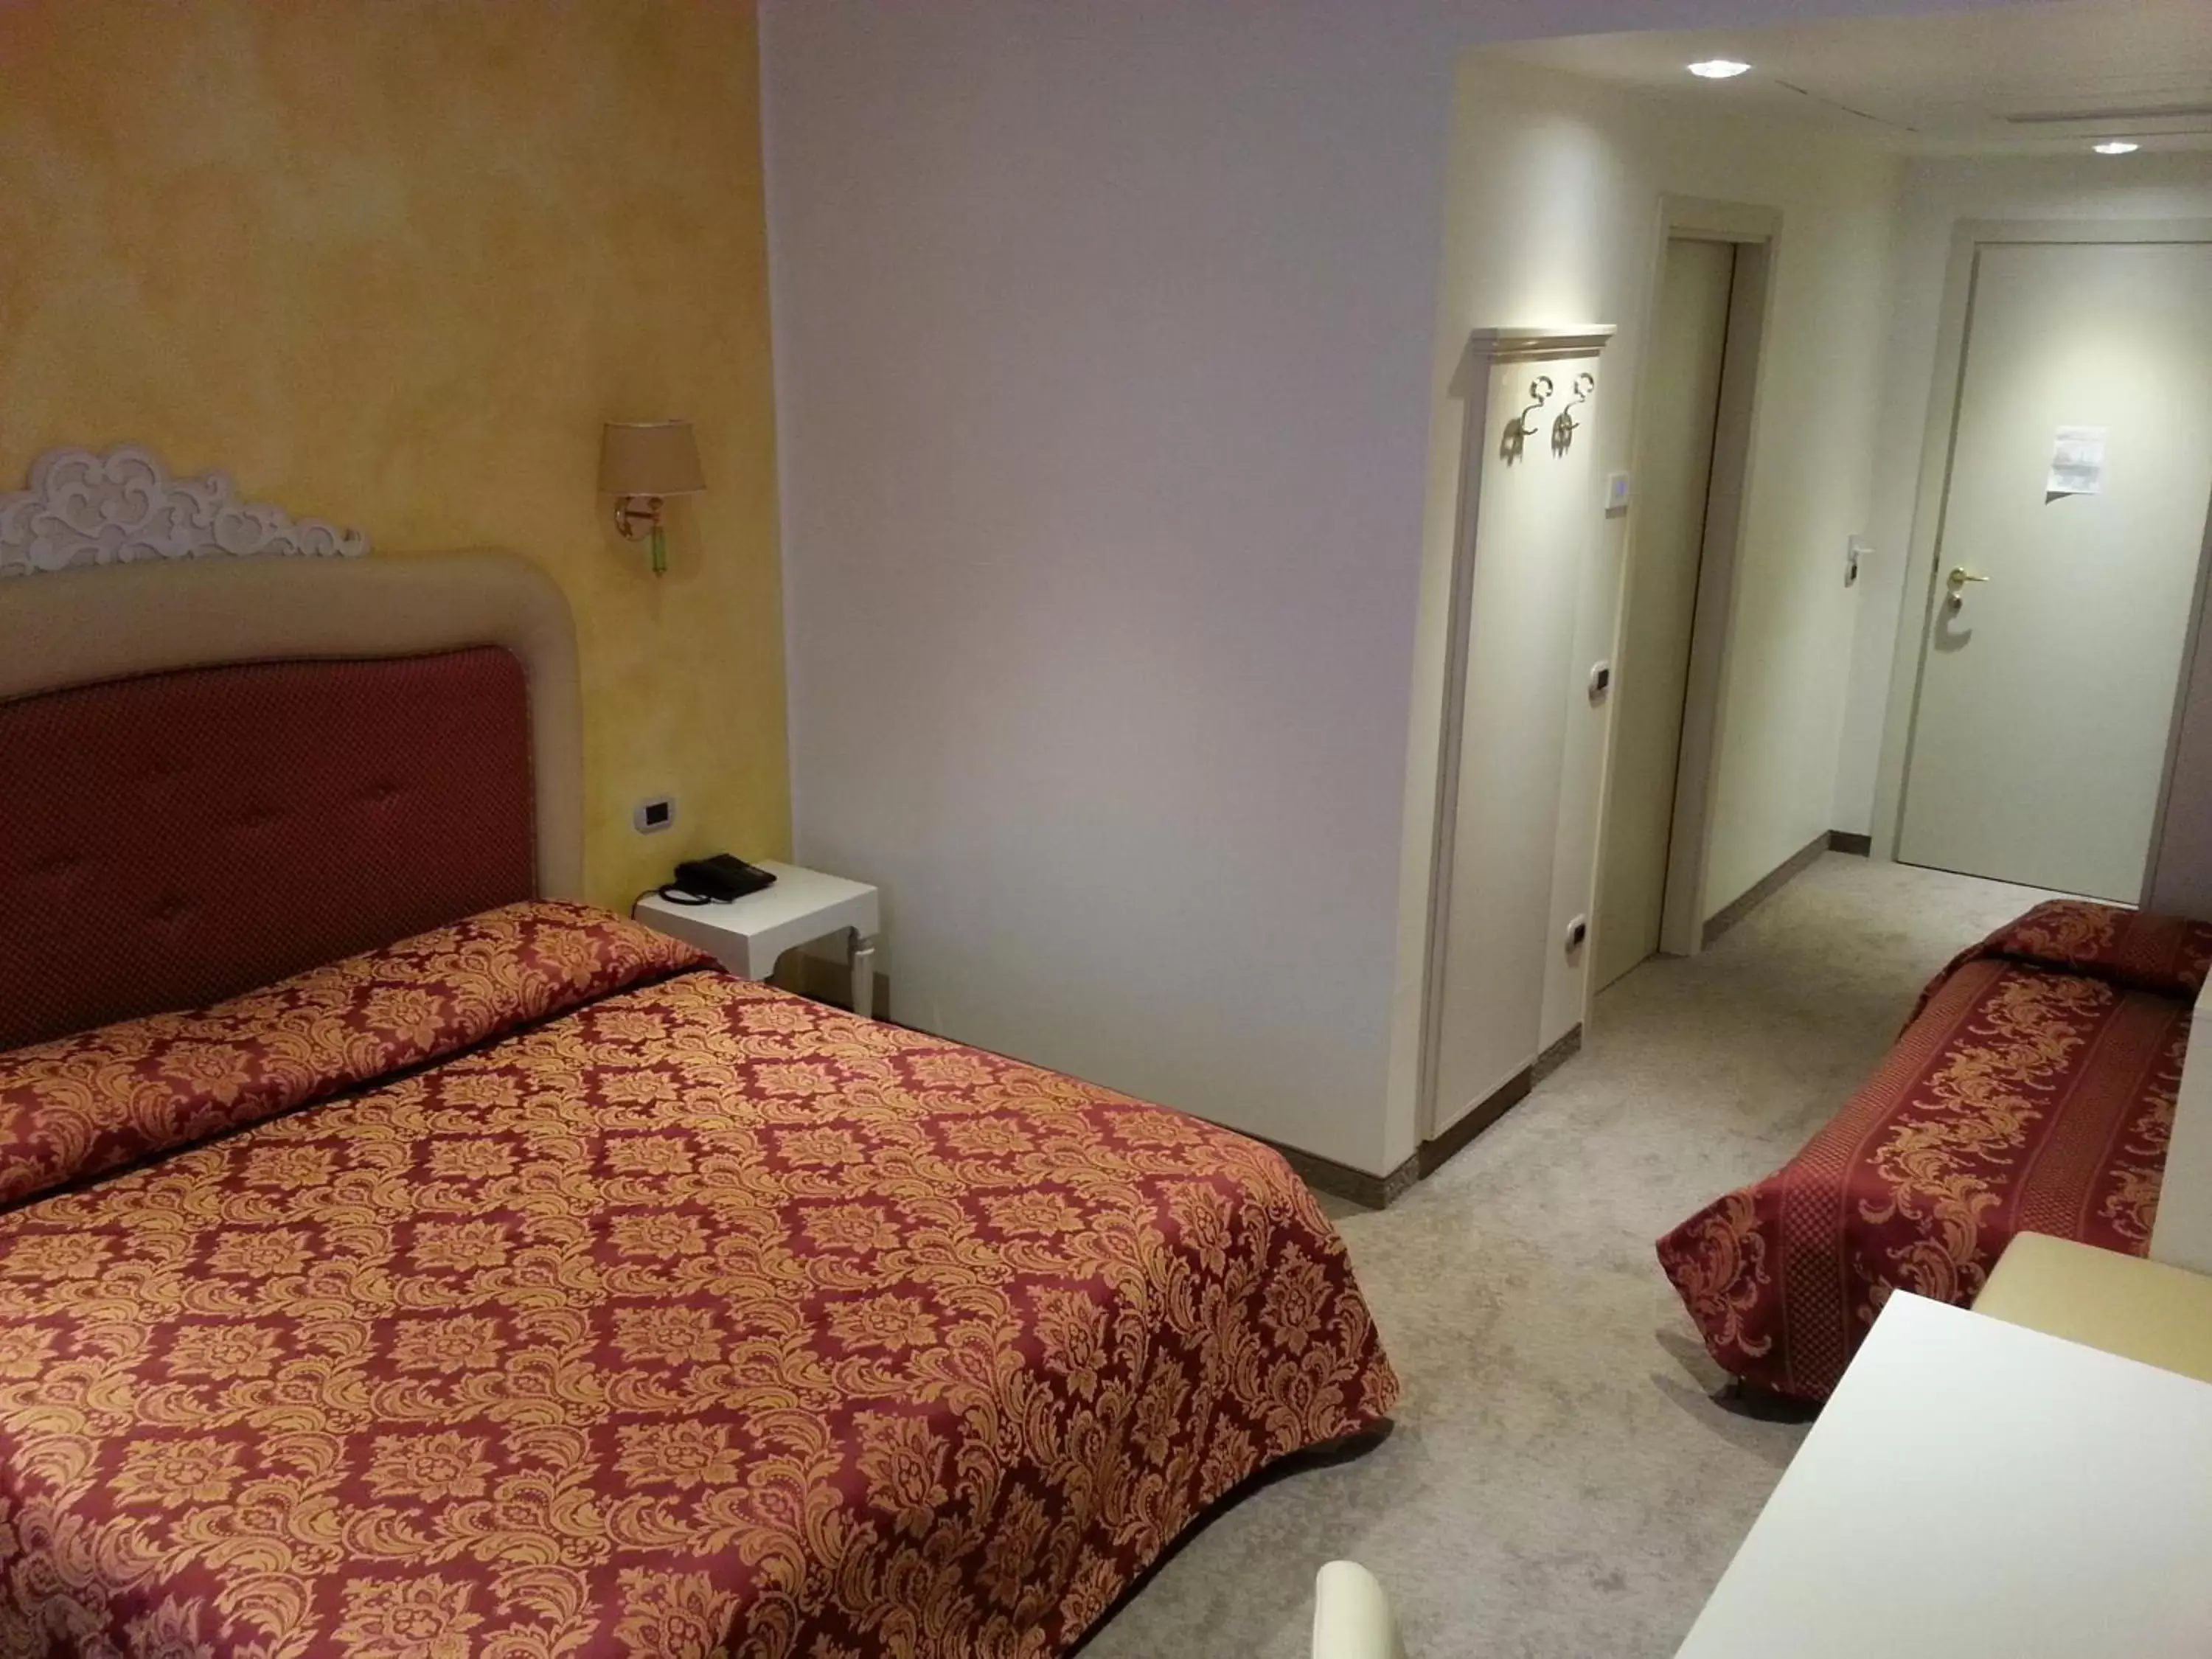 Photo of the whole room, Bed in Palace Hotel "La CONCHIGLIA D' ORO"